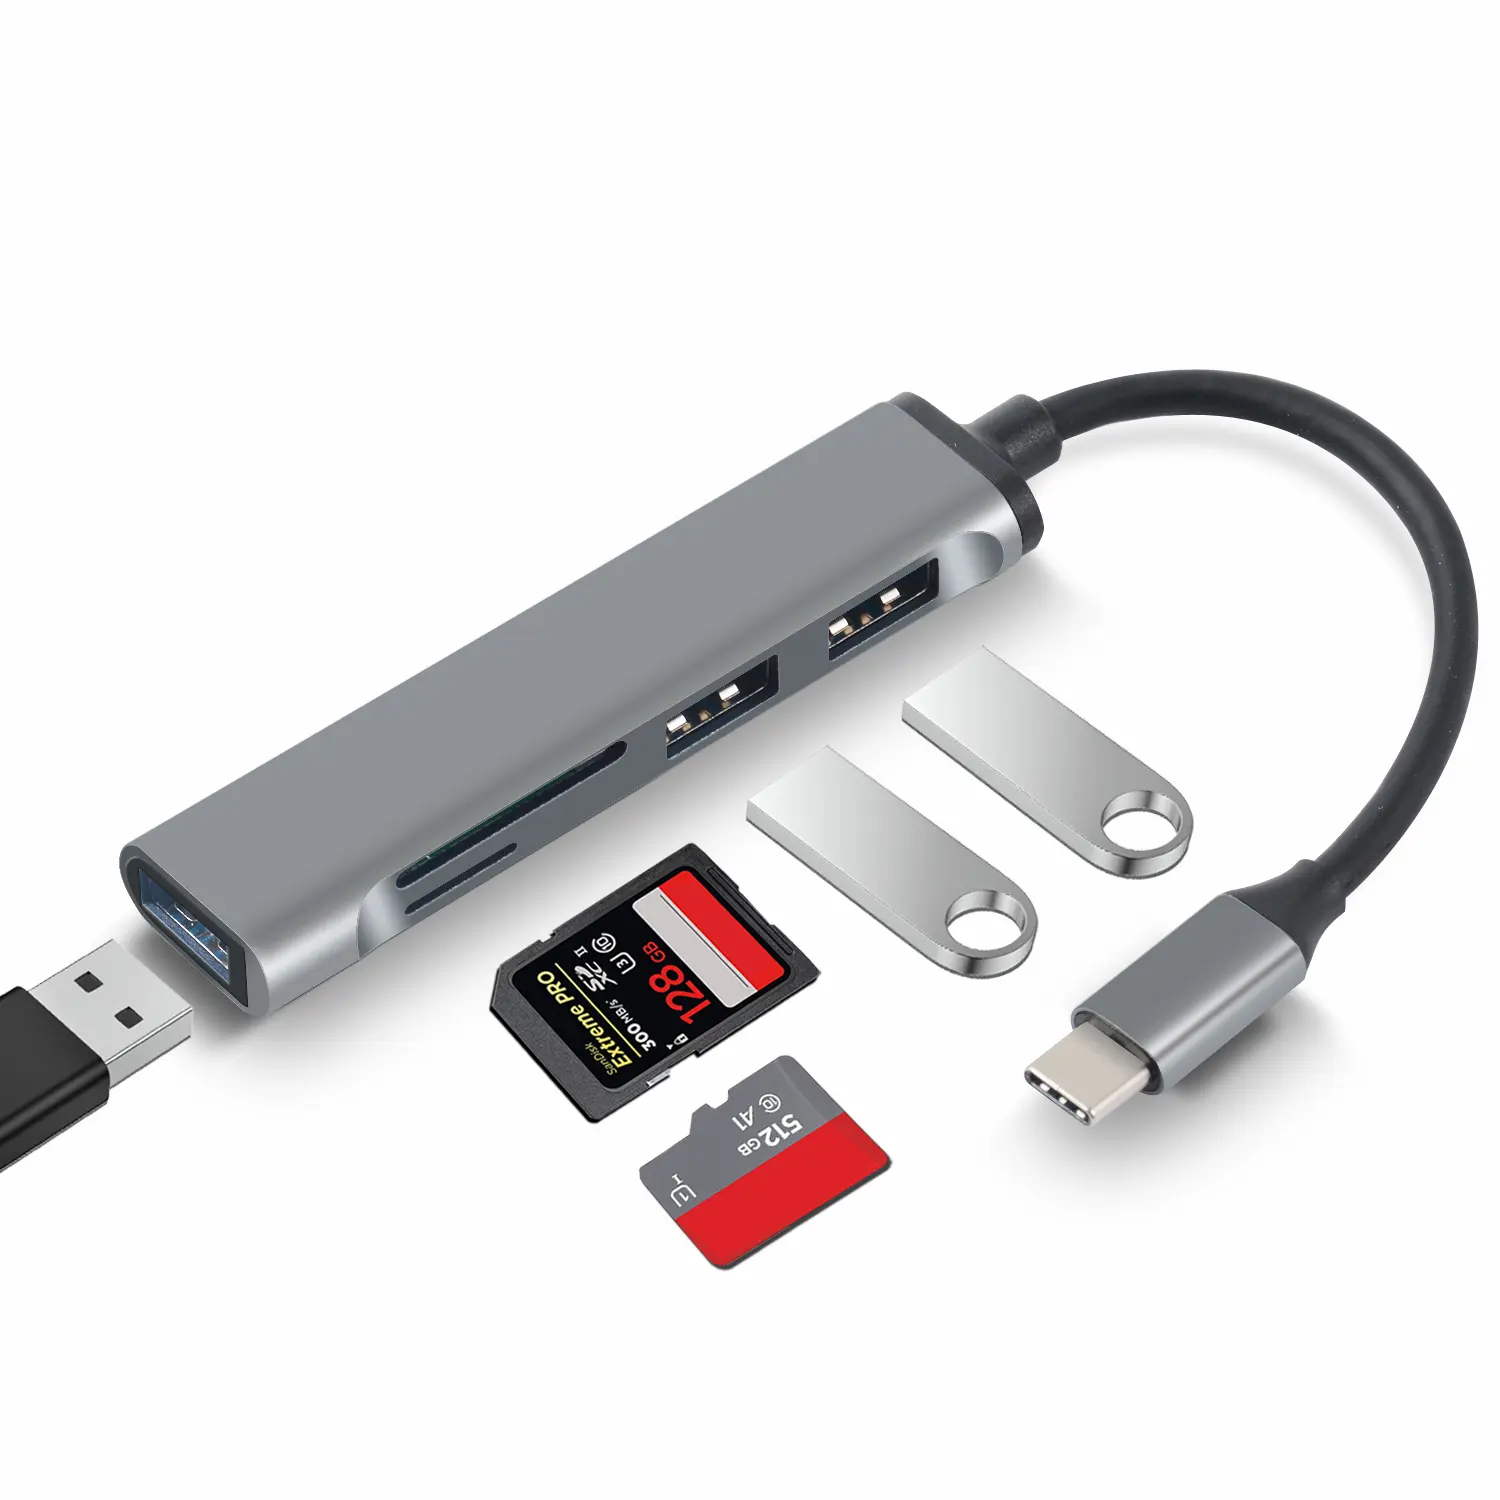 2022 최신 허브 5 1 유형 c 도킹 스테이션 멀티 포트 어댑터 USB C 허브 USB2.0 USB3.0 SD TF 카드 리더